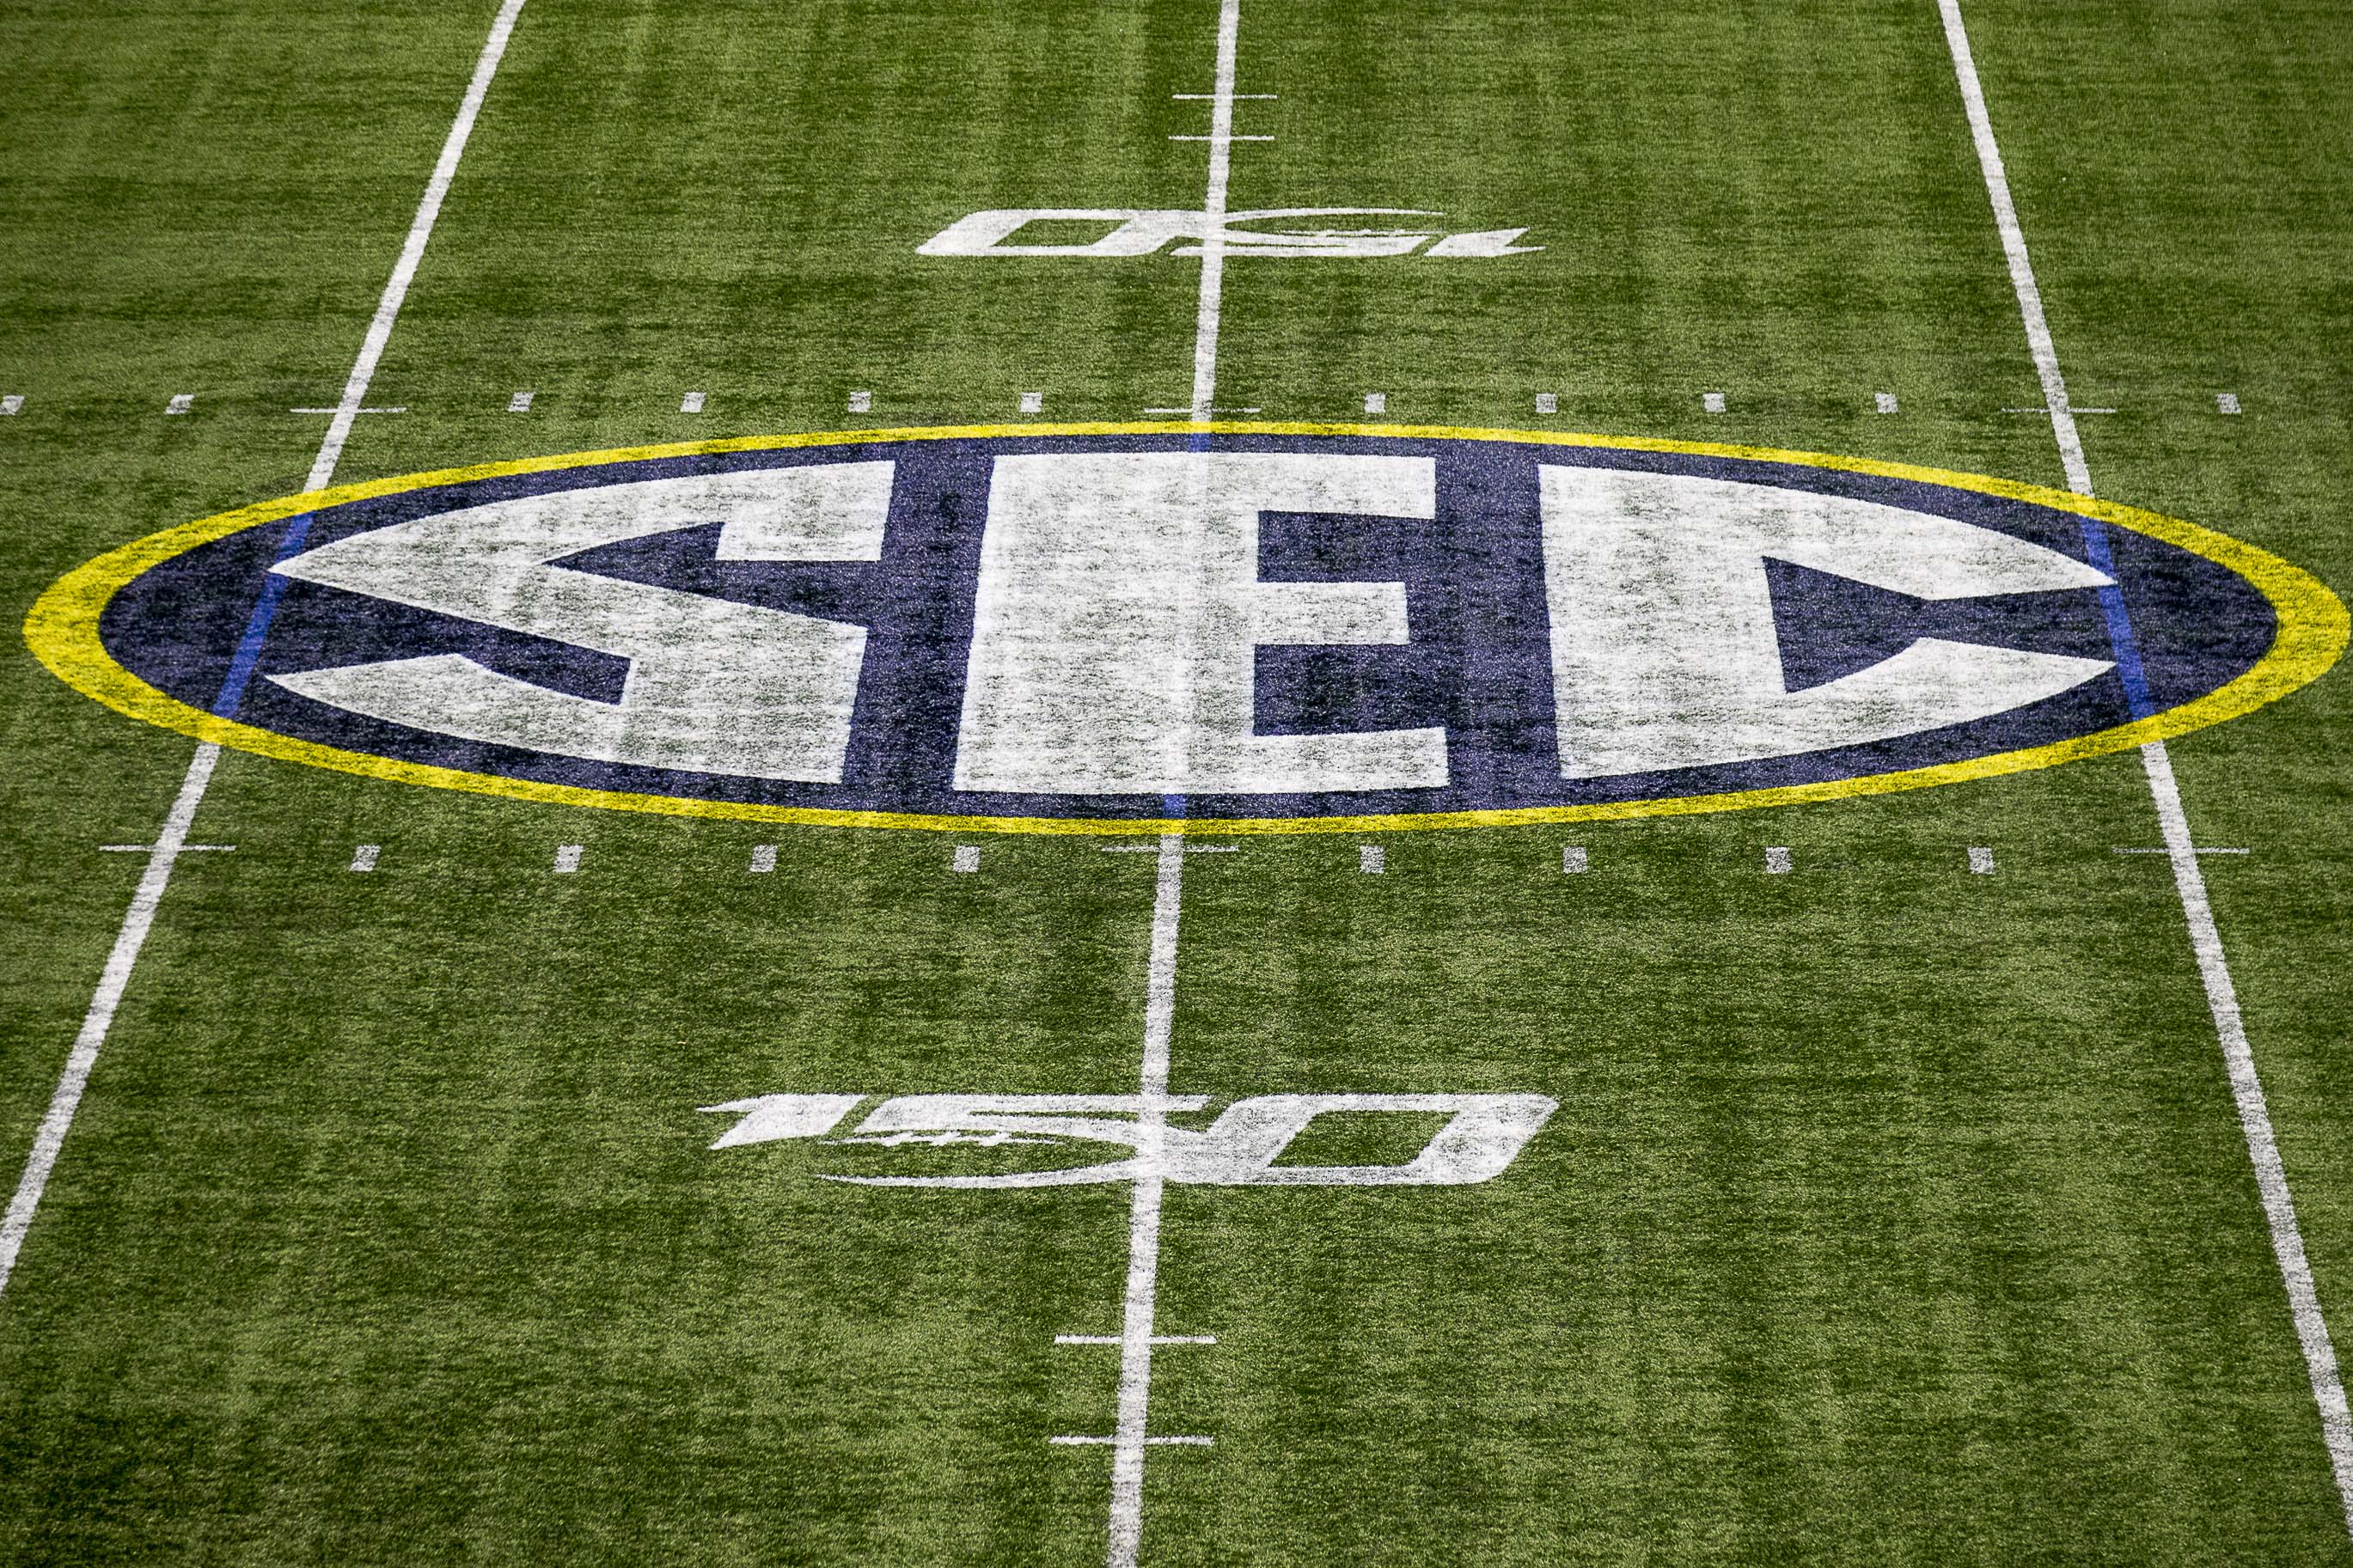 How SECs new TV deal will affect league, fans